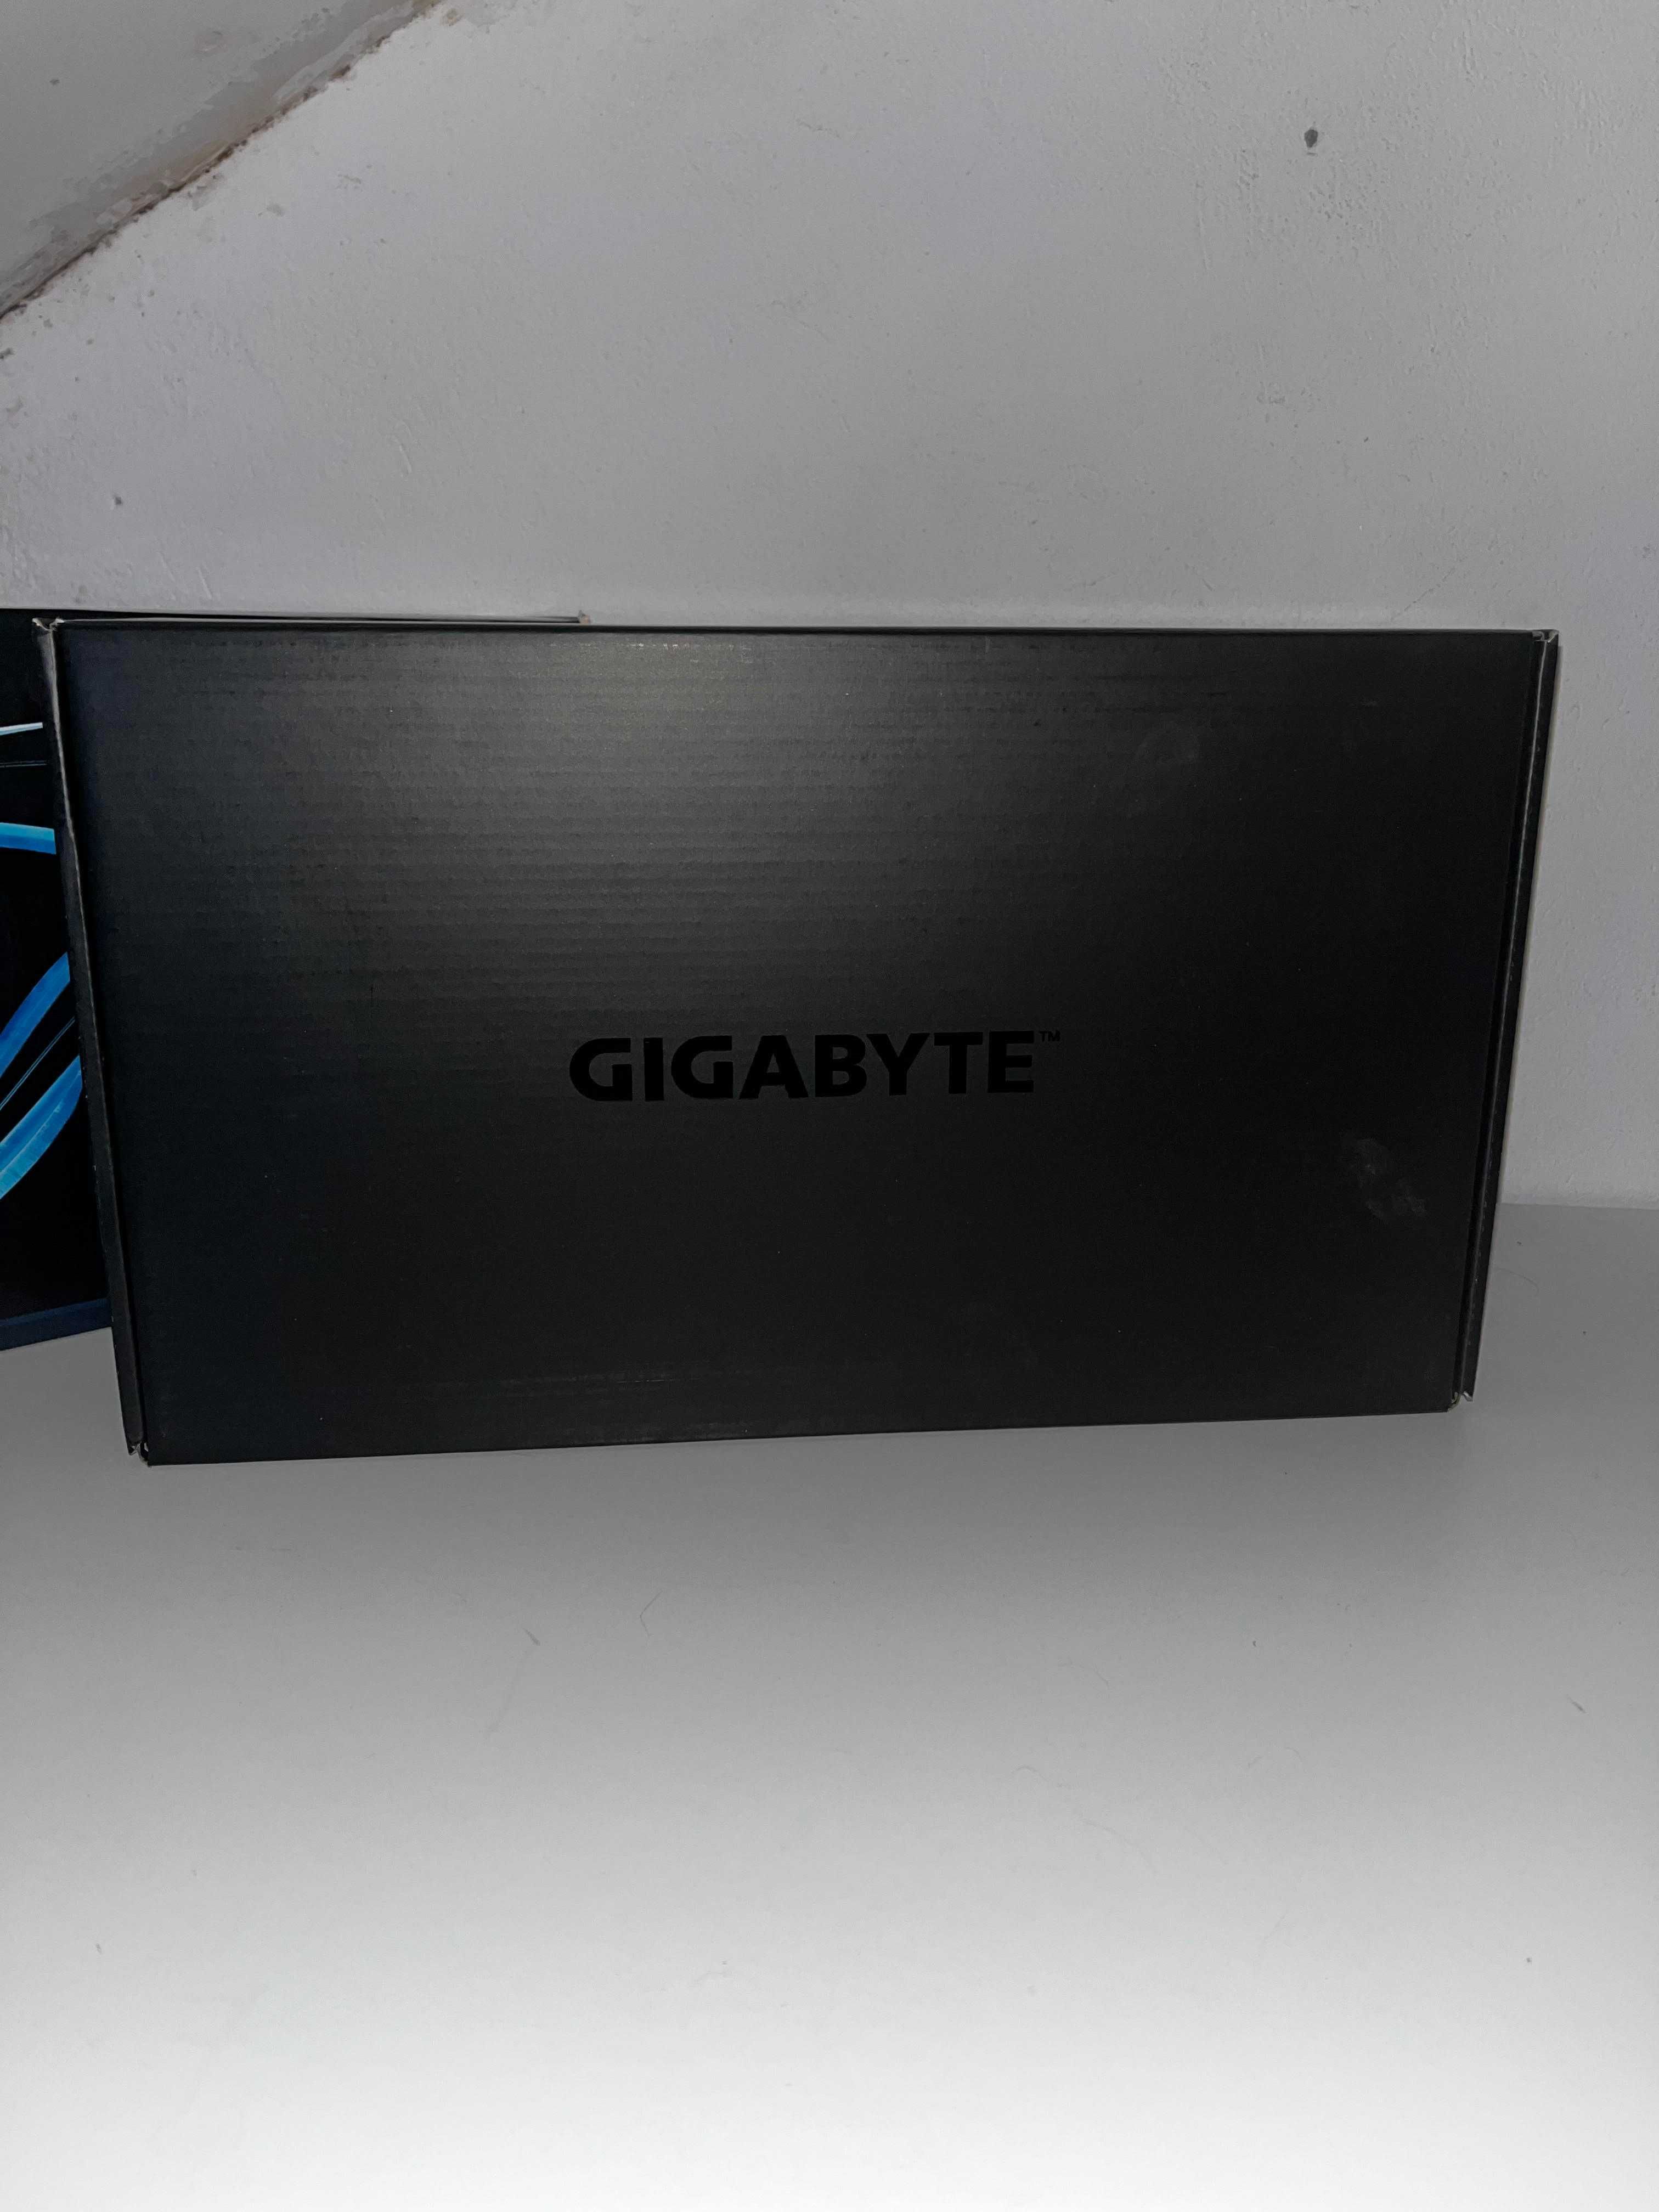 GIGABYTE GTX 770 WINDOFRCE 2GB bardzo dobry stan!